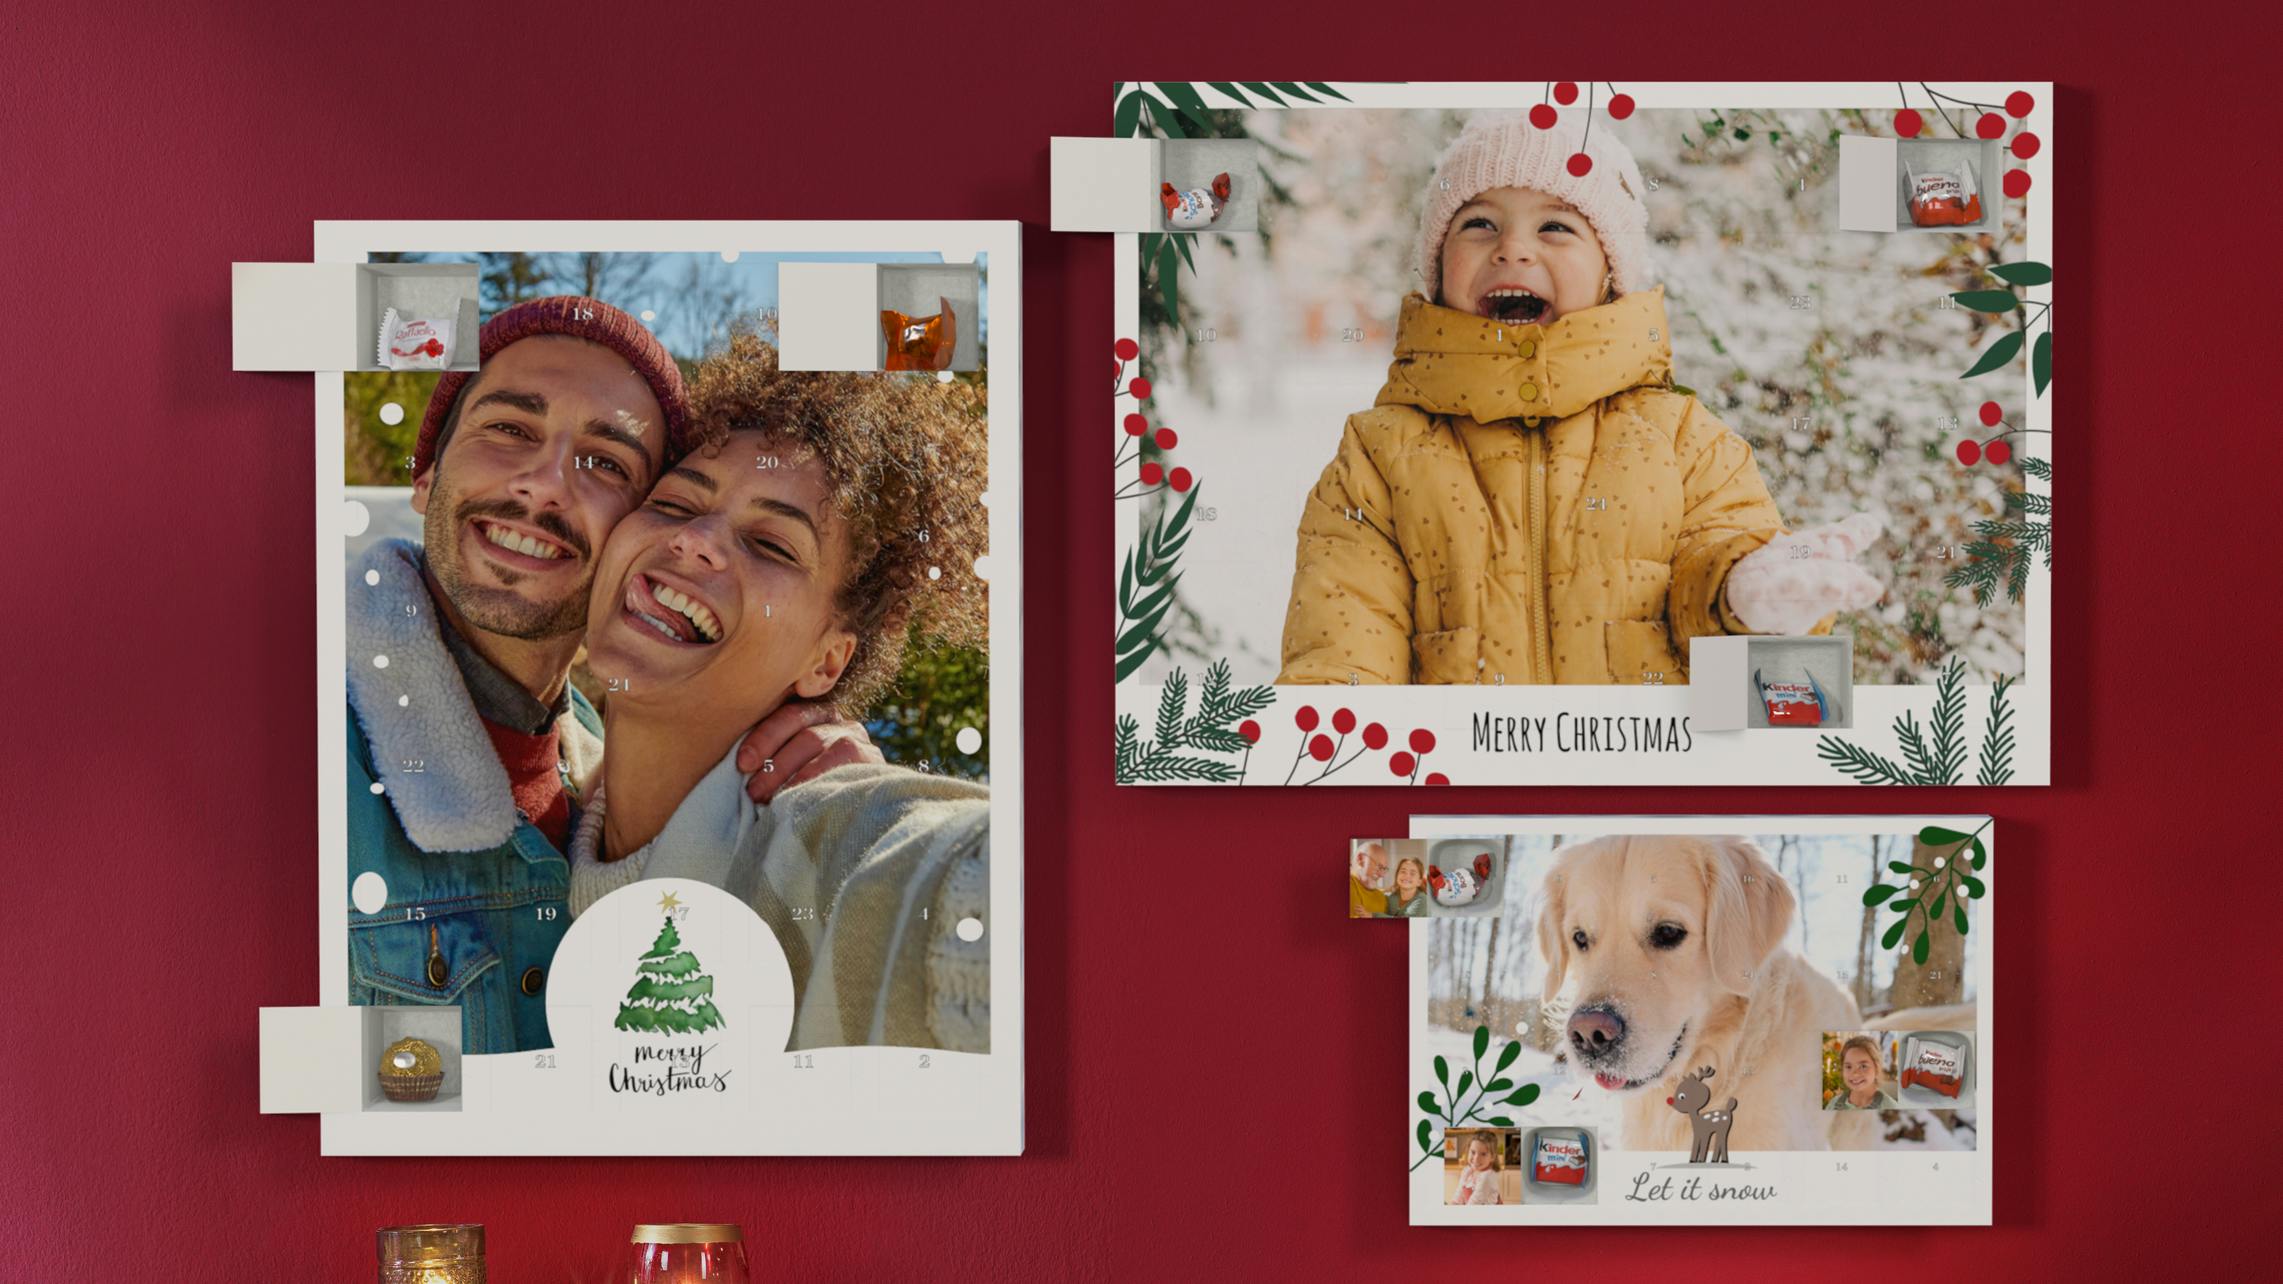 Foto-Adventskalender mit Schokolade von Kinder und Ferrero Pralinen im weihnachtlichen Ambiente